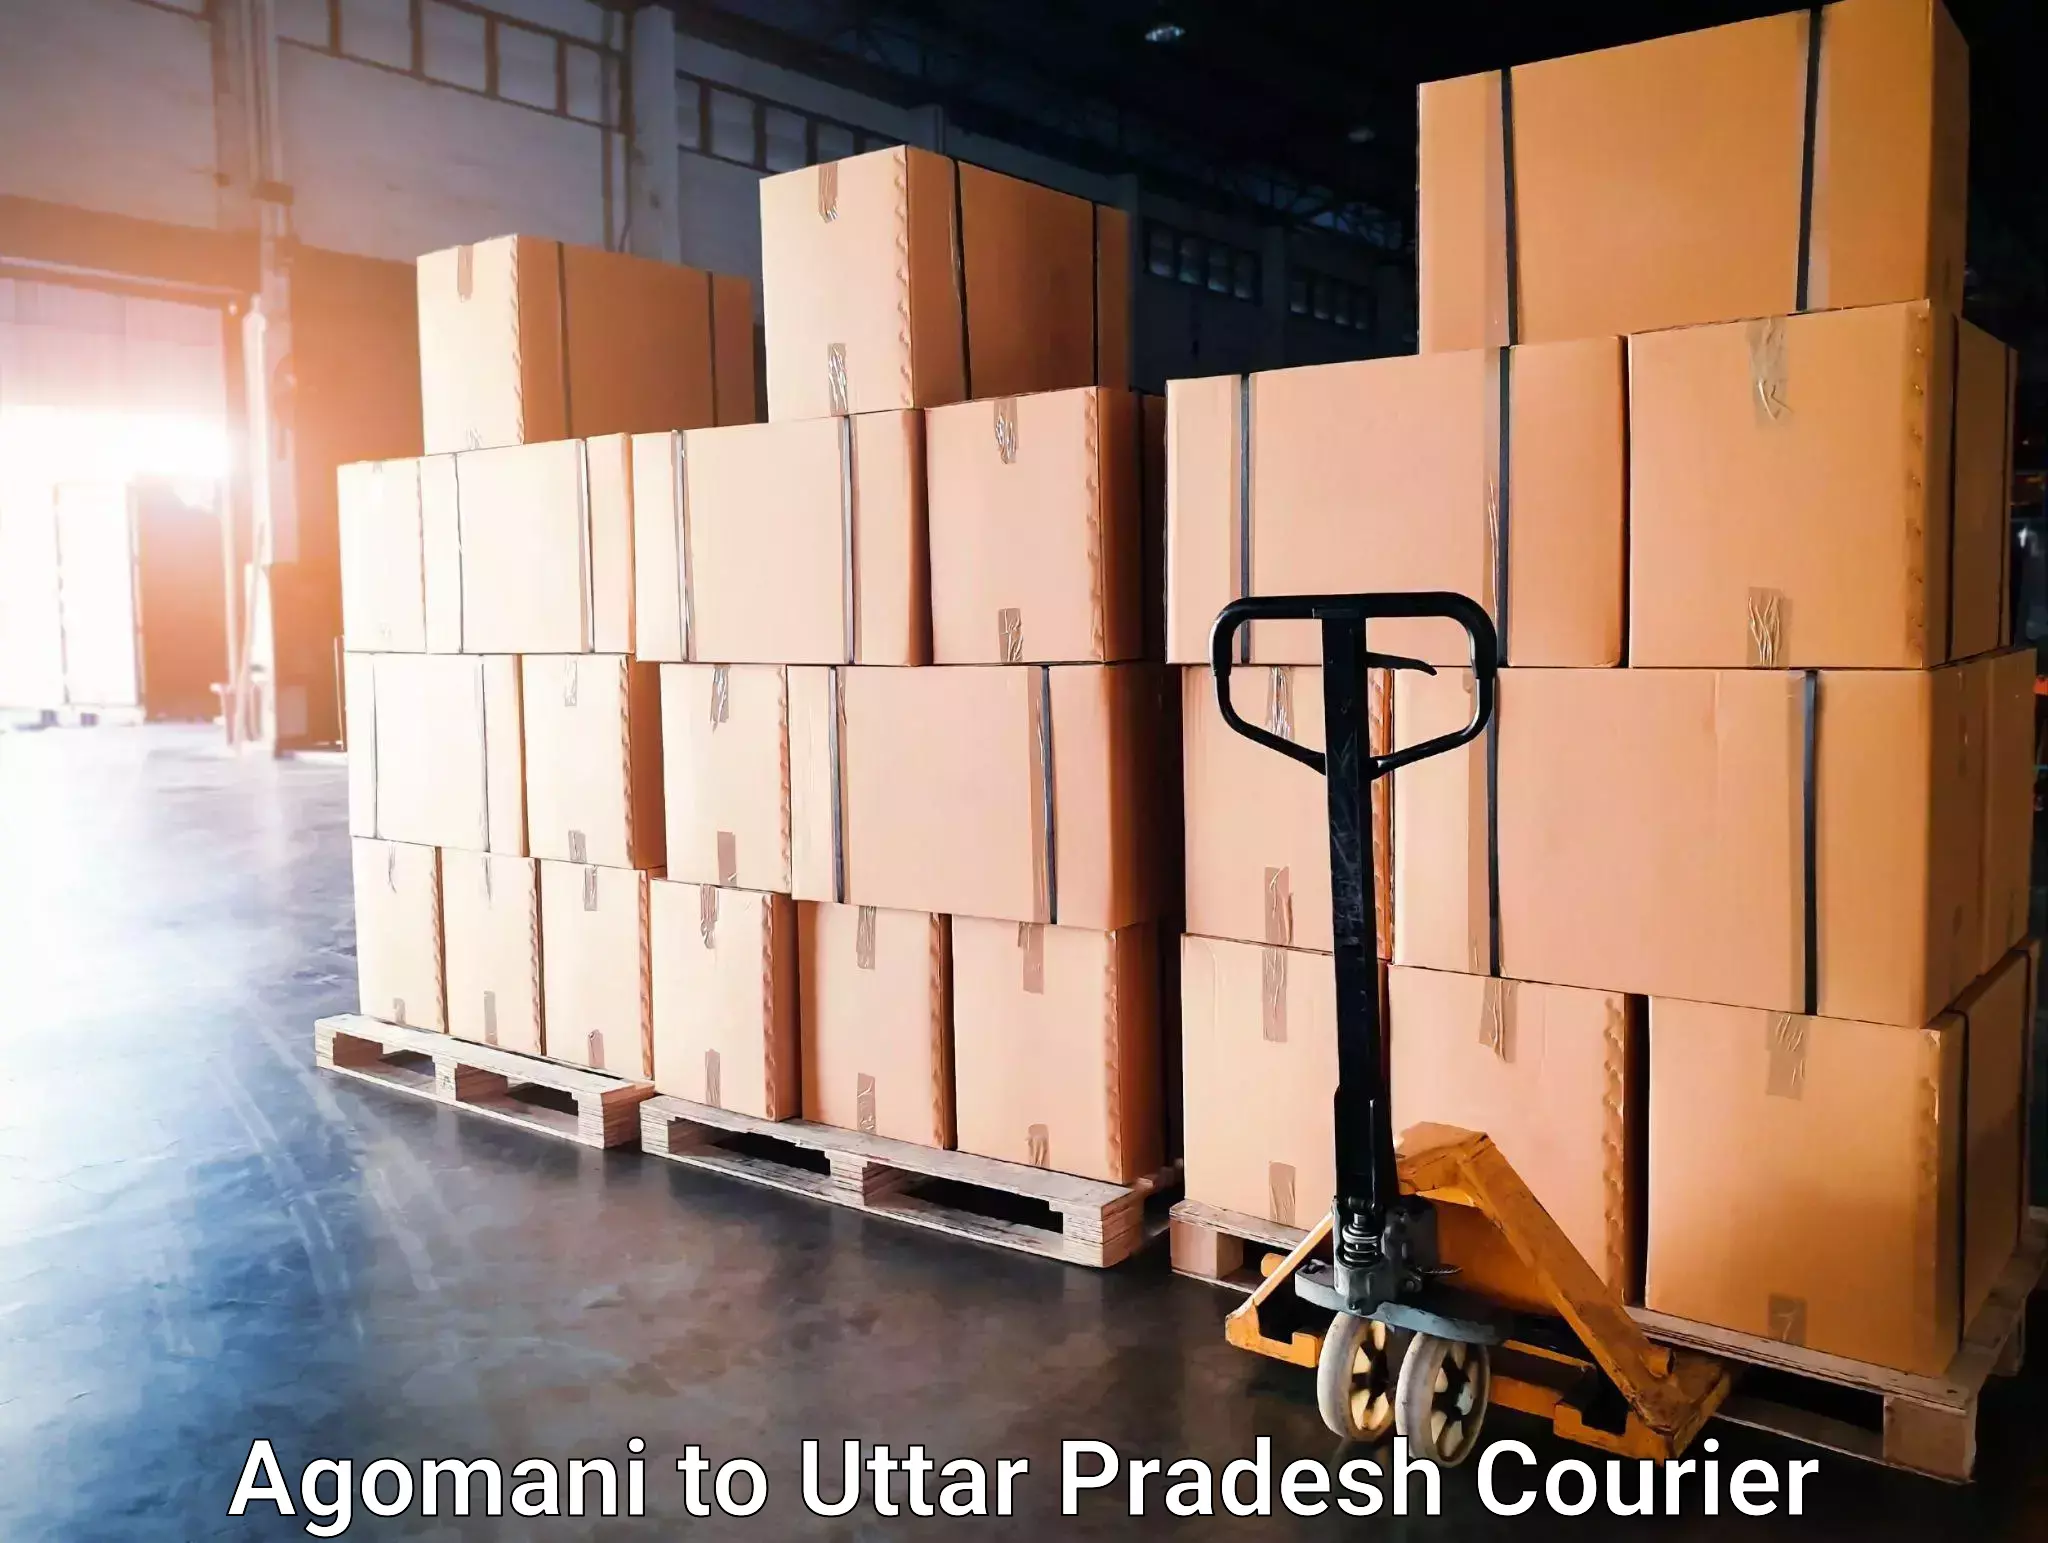 Global logistics network Agomani to Tilhar